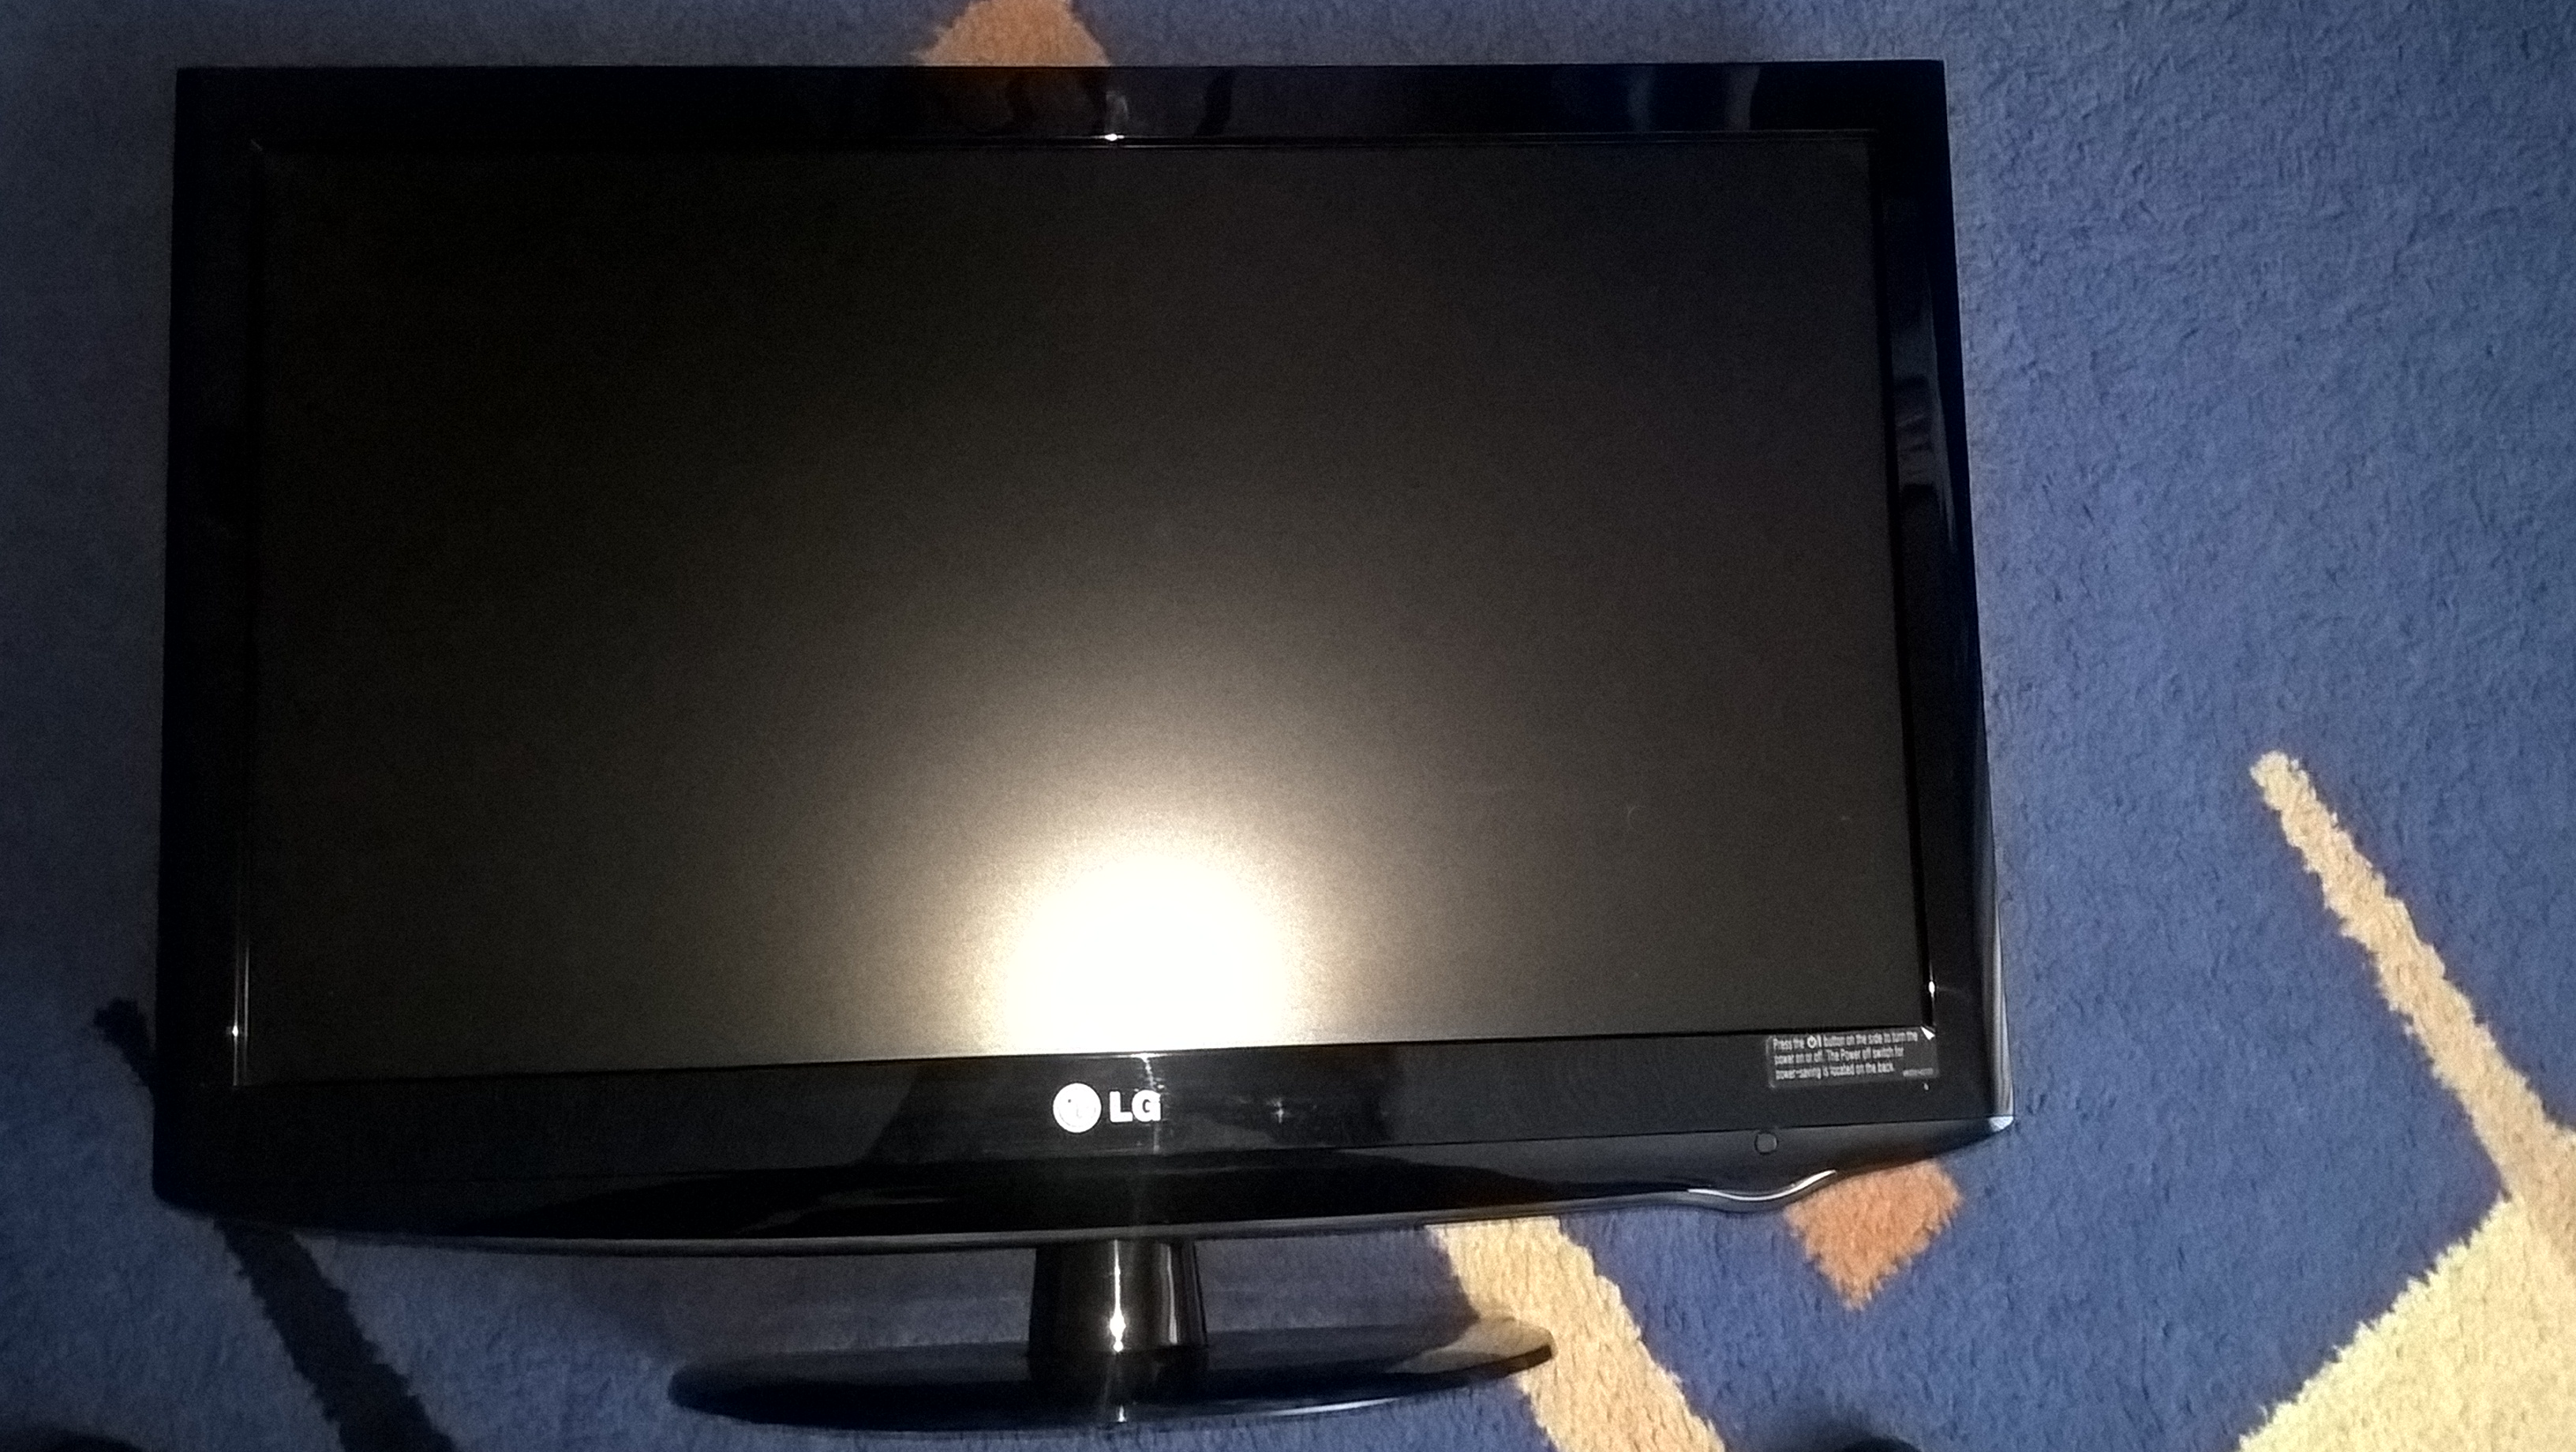 Продам телевизор lg. LG 22lh2000. Подставка для LG 22lh2000. 22lh2000. LG 22lh2000 майн.